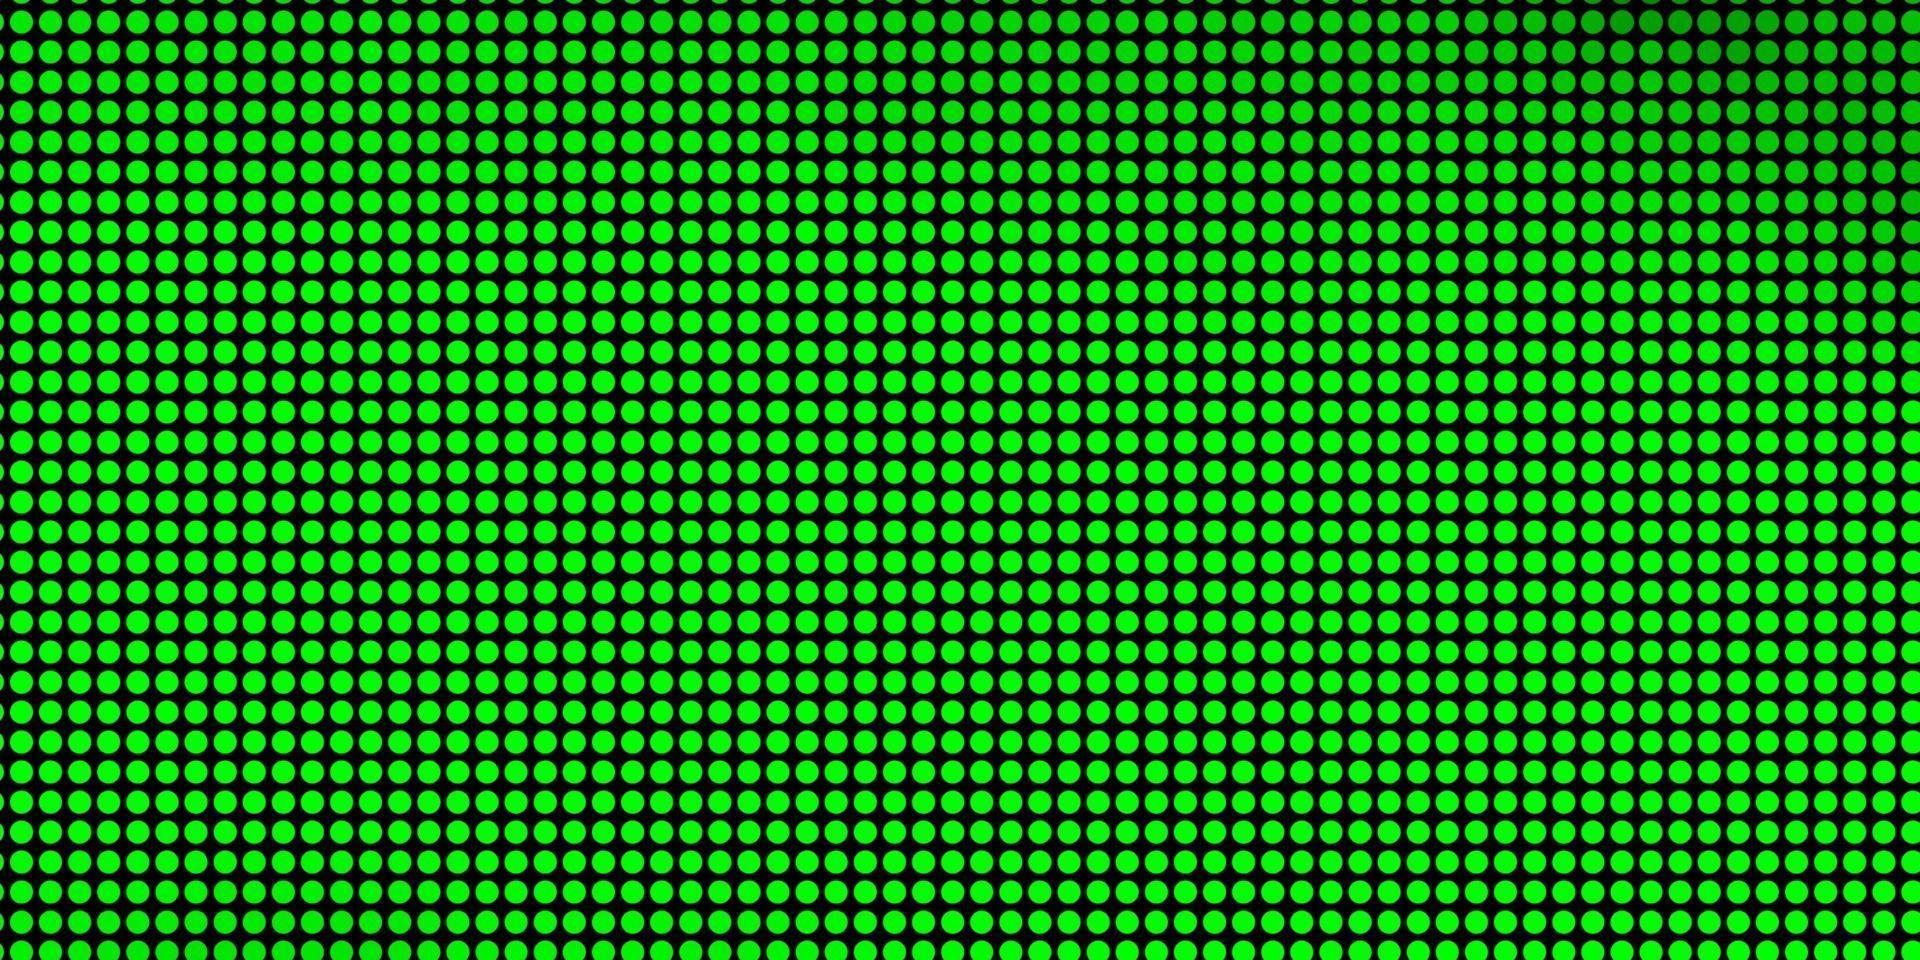 padrão de vetor verde claro com esferas.